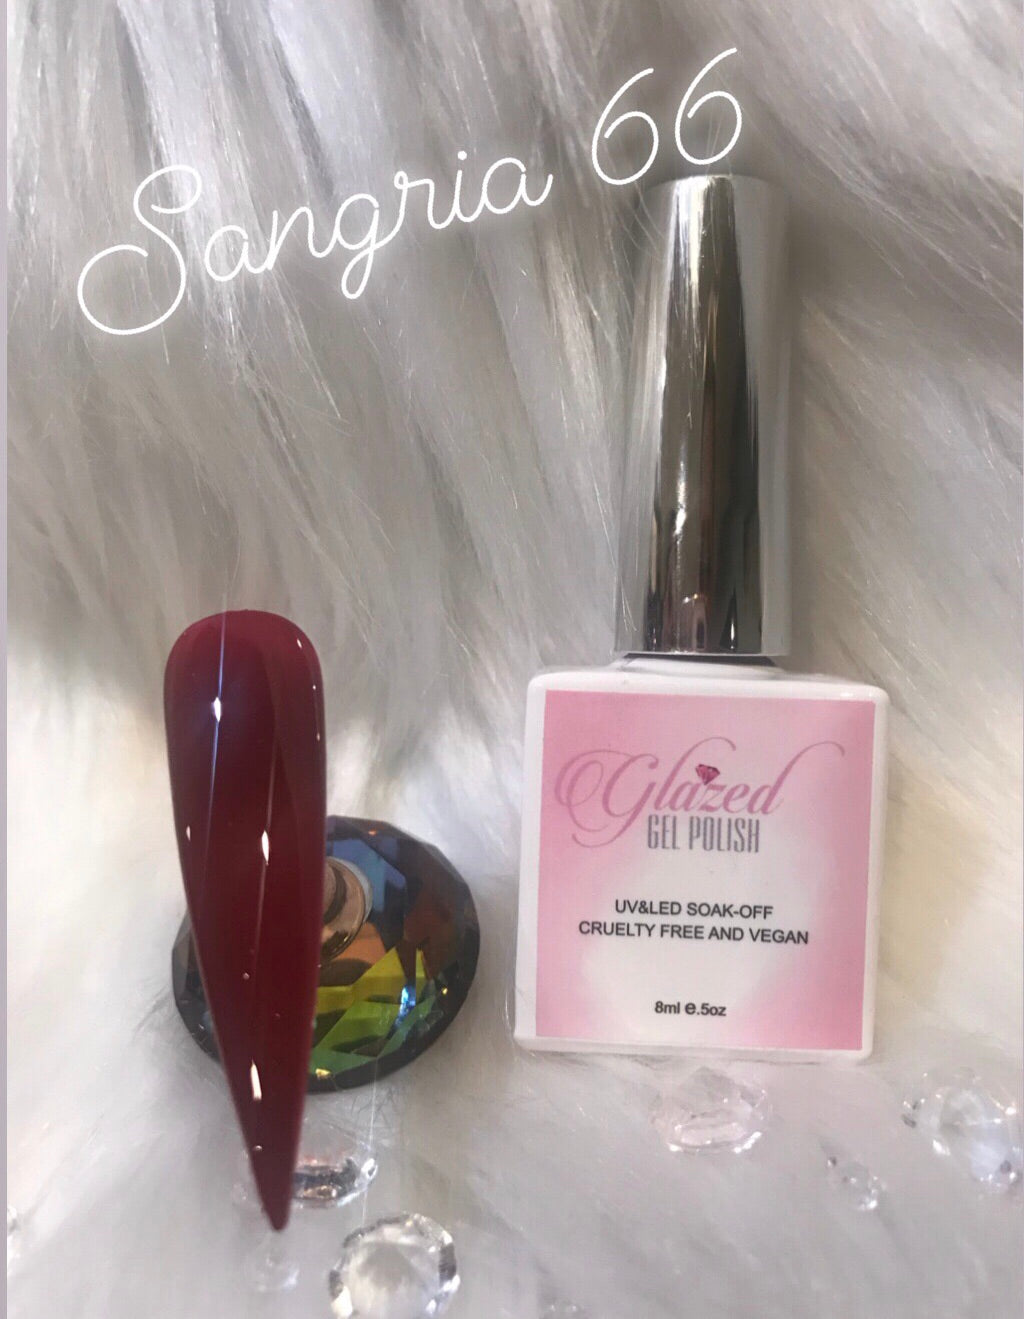 Sangria Glazed Gel Polish 66